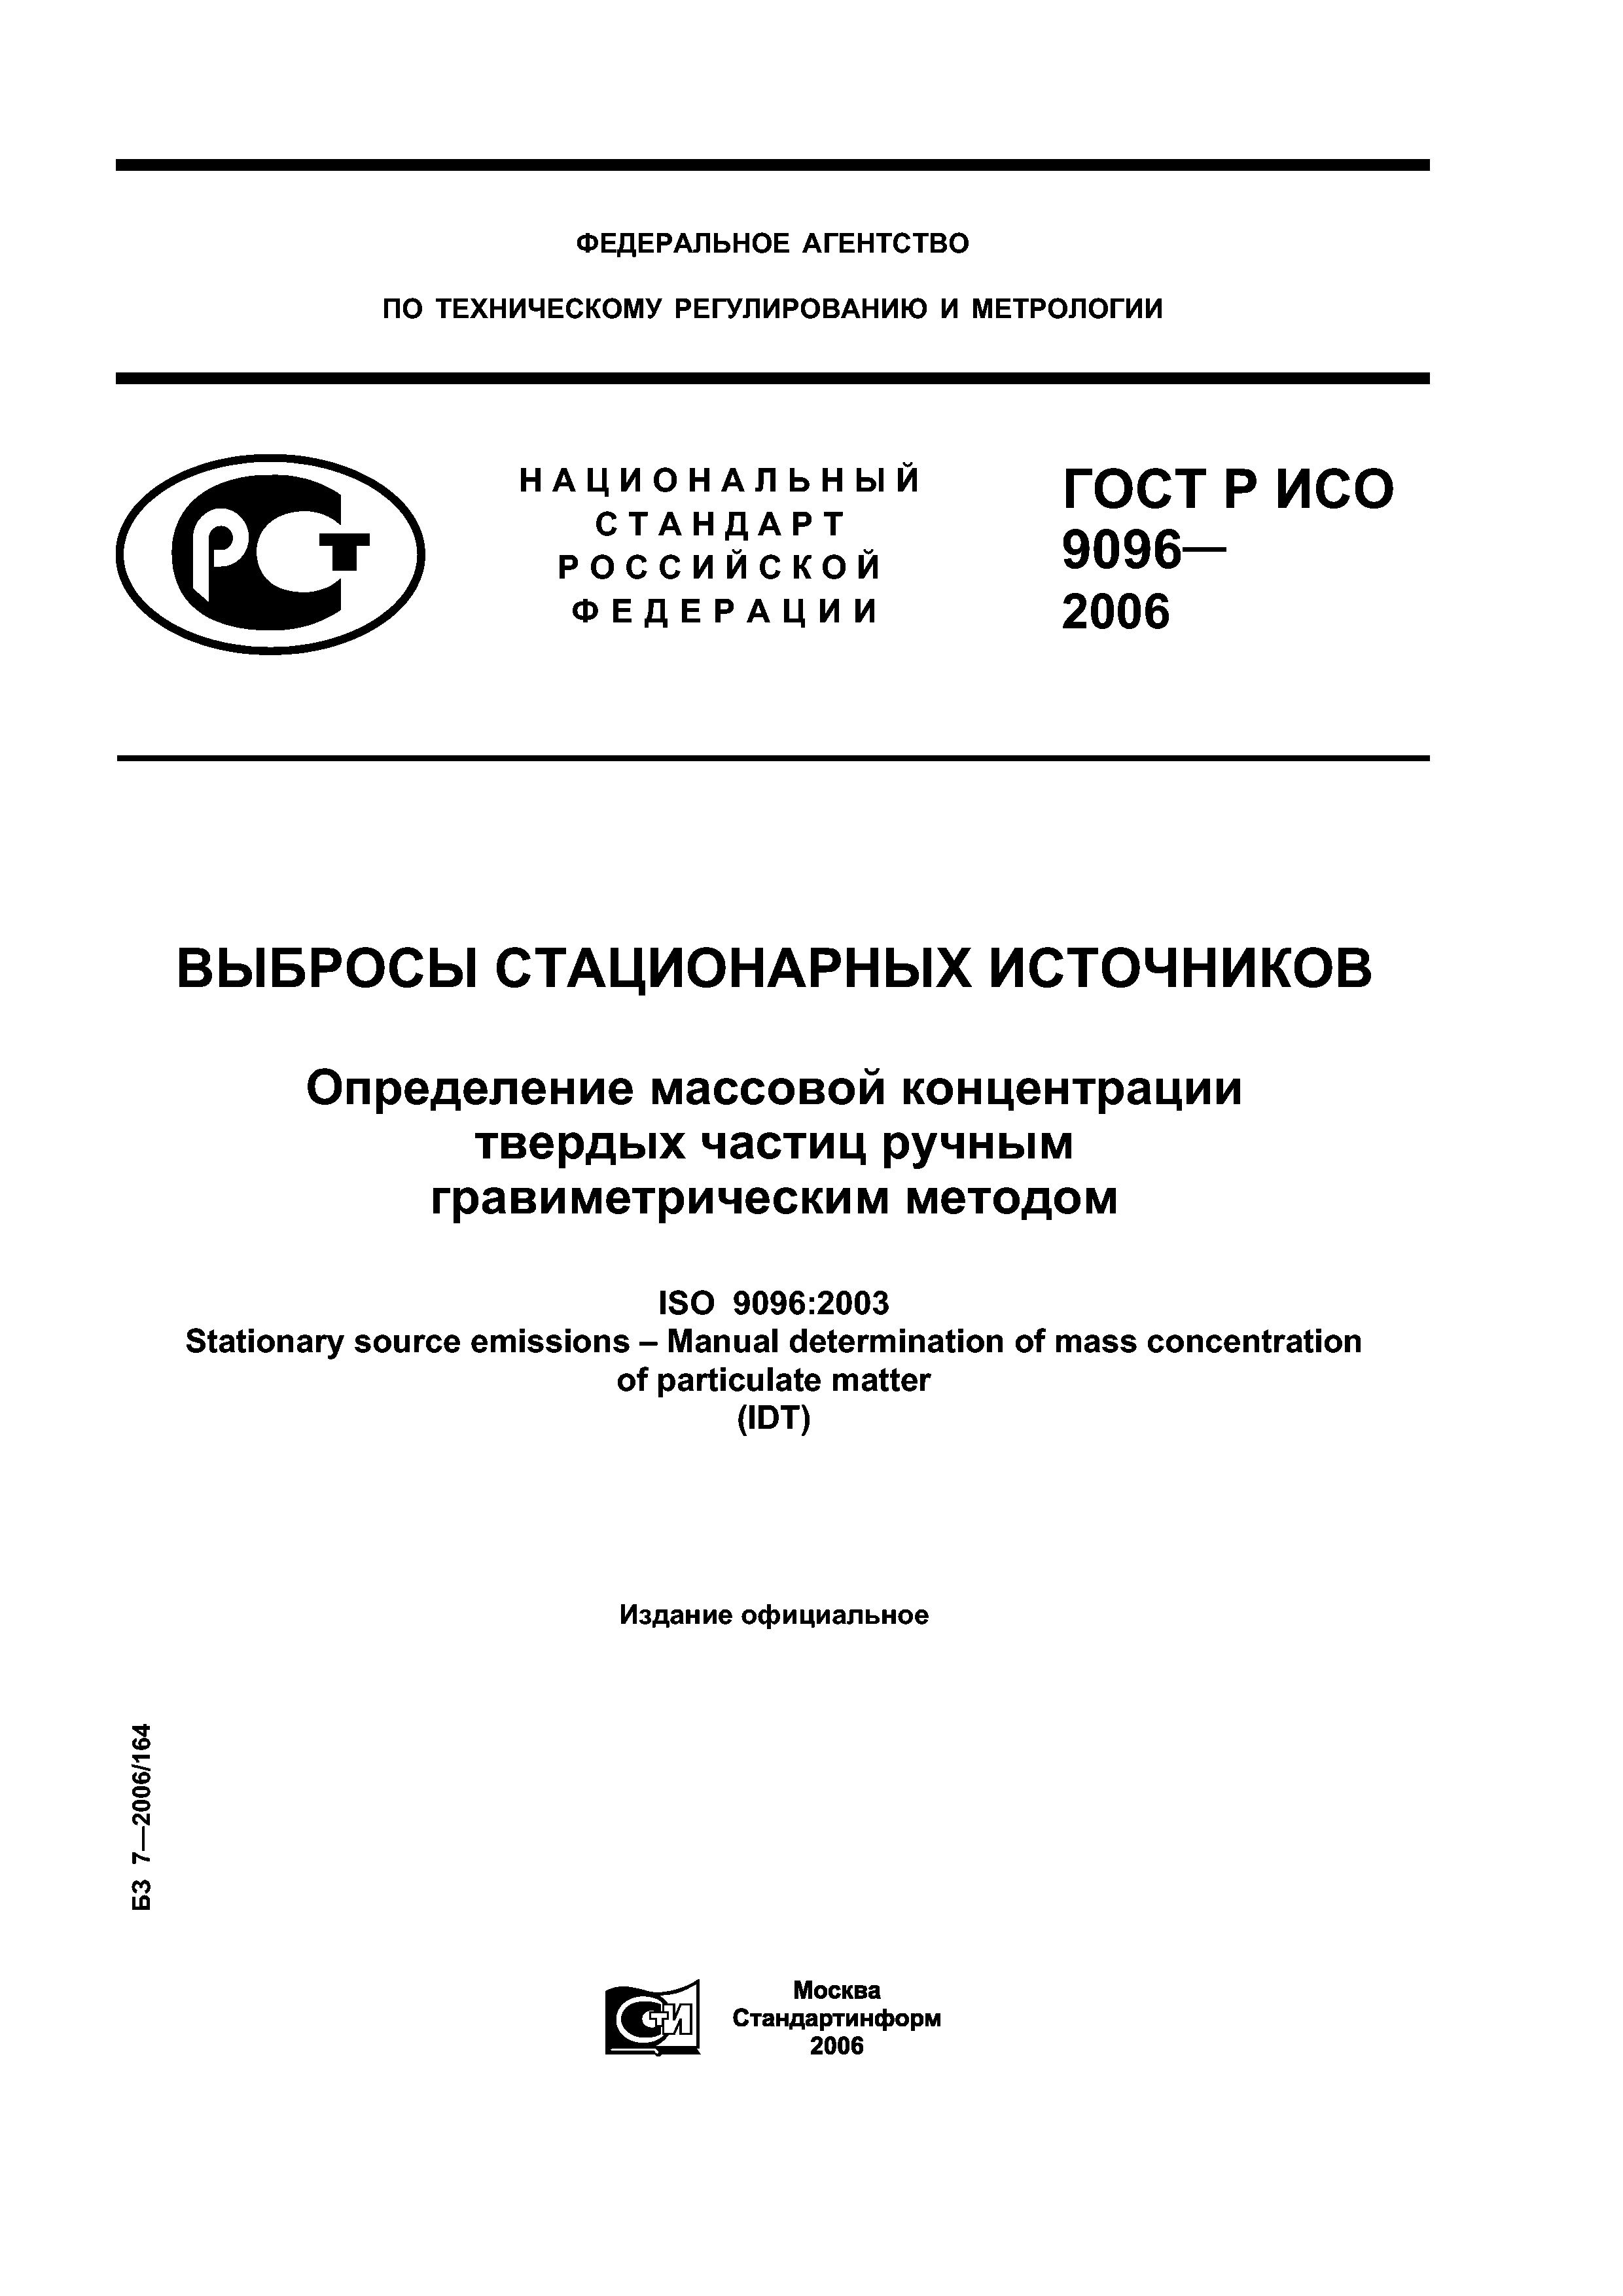 ГОСТ Р ИСО 9096-2006